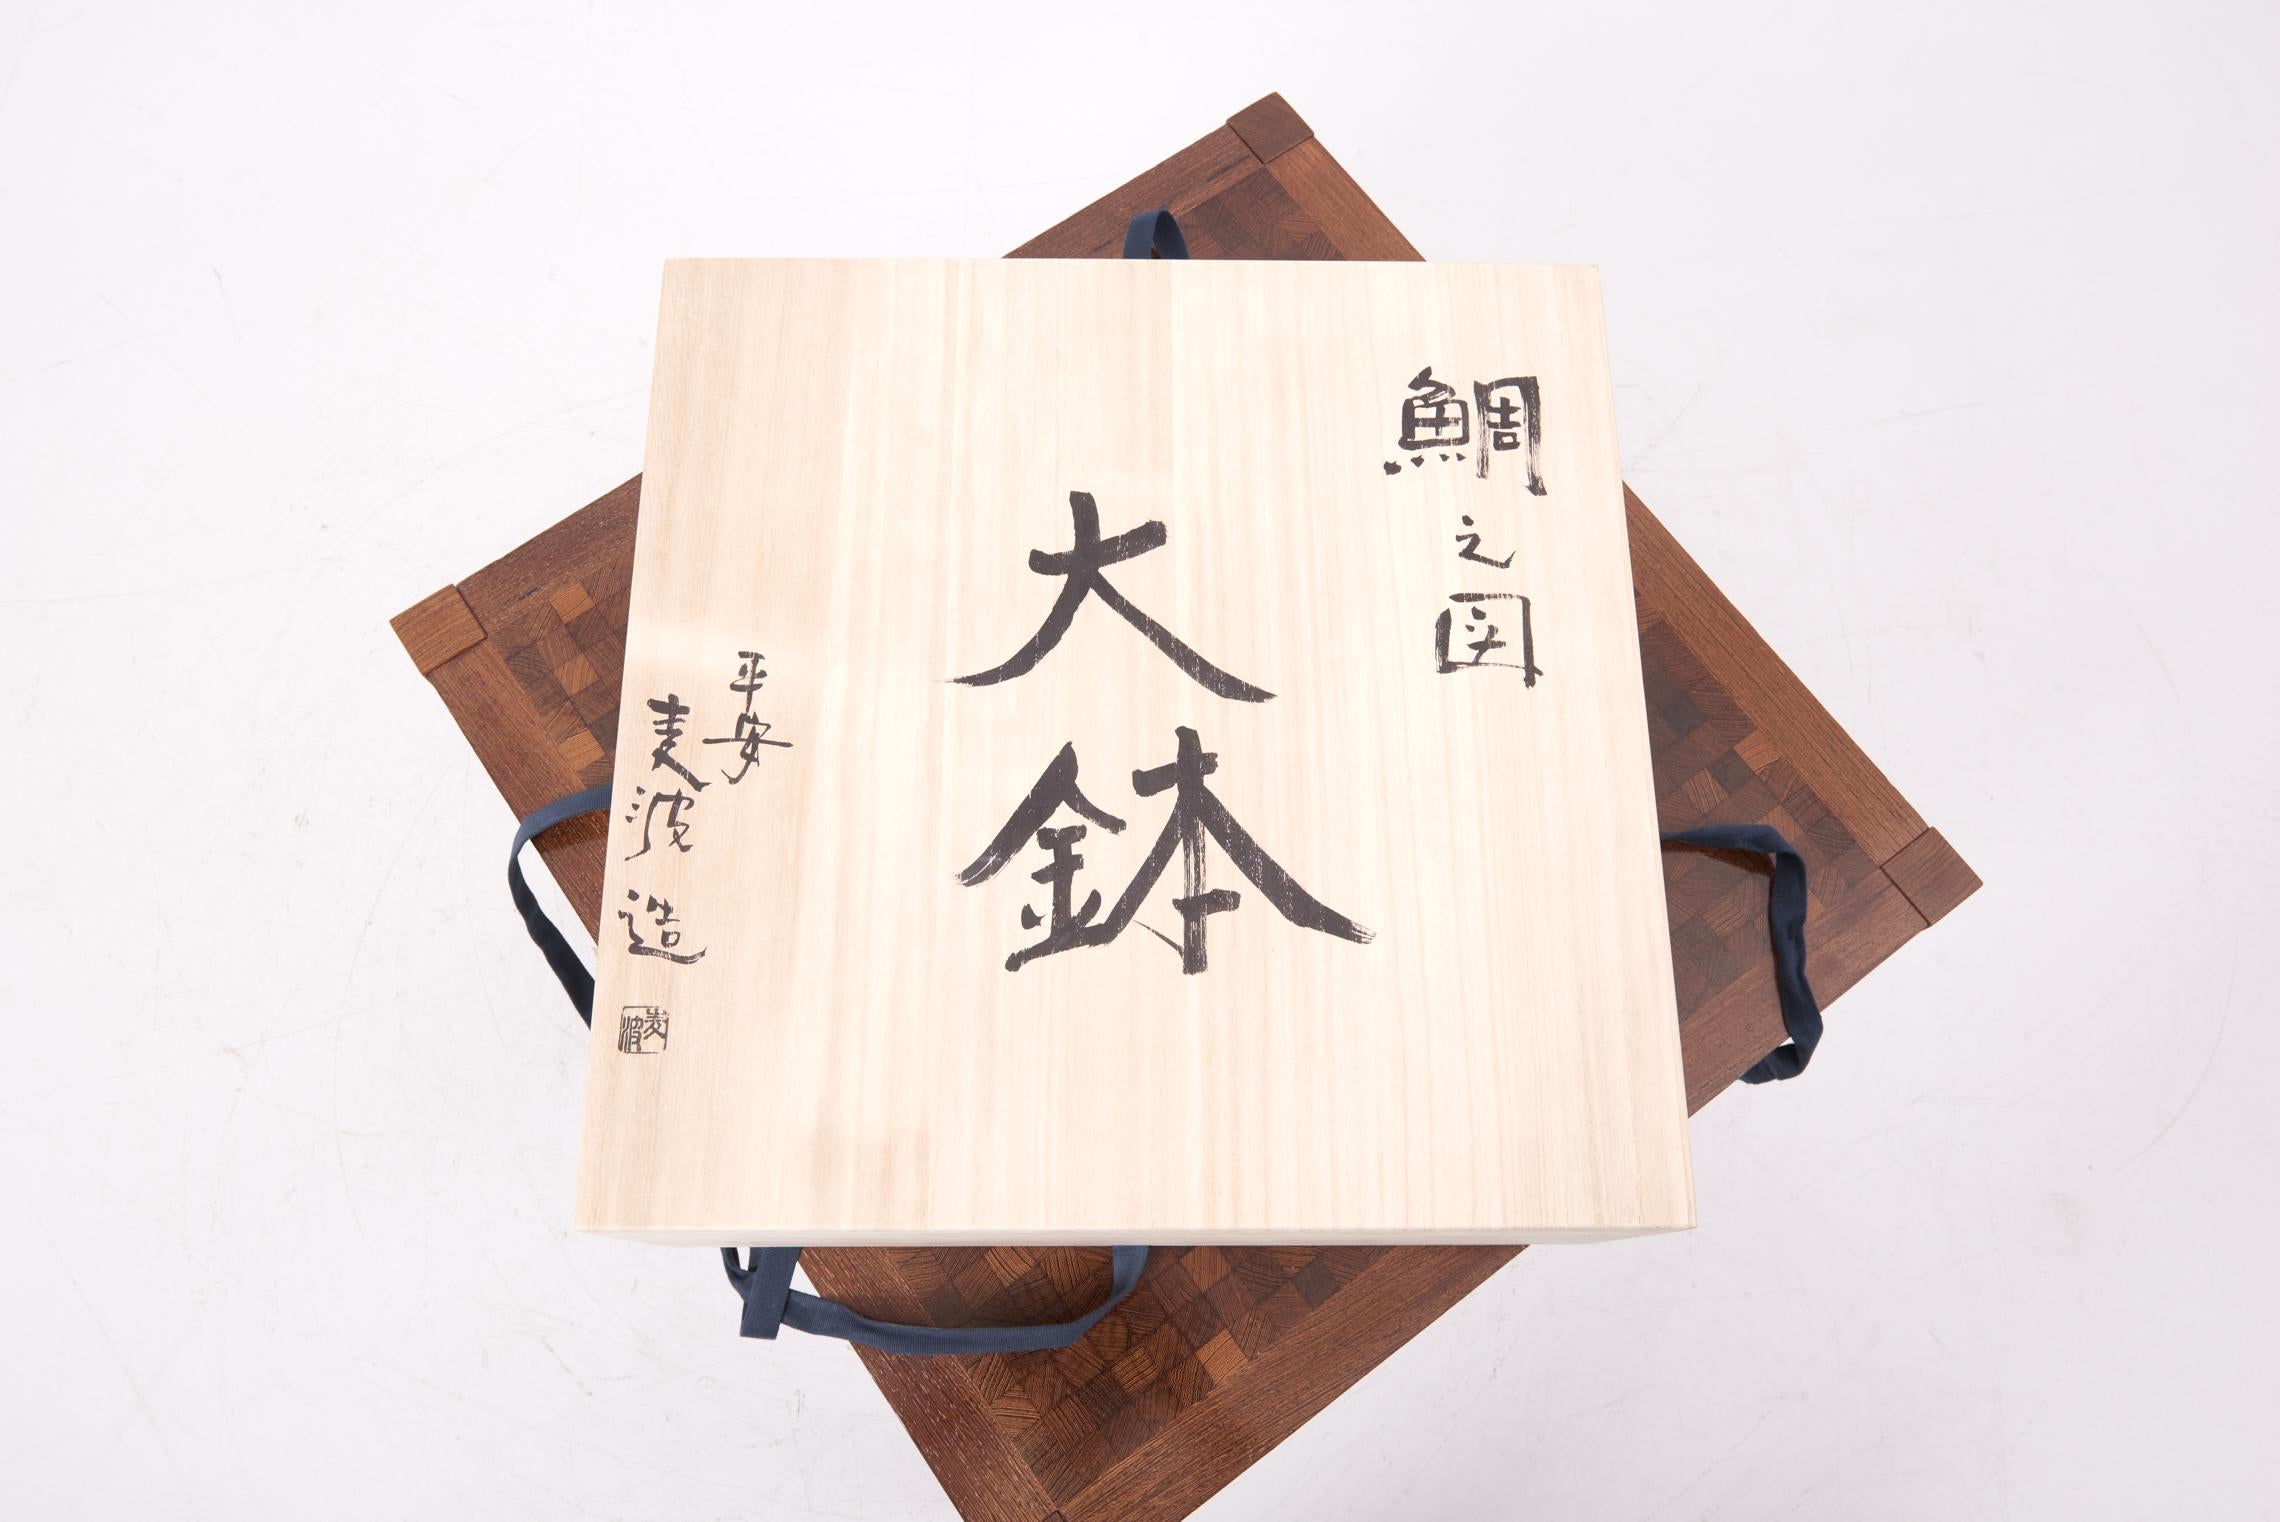 Neue & handbemalte Keramikschale. Japan 2016. 2. ähnliches Stück verfügbar.